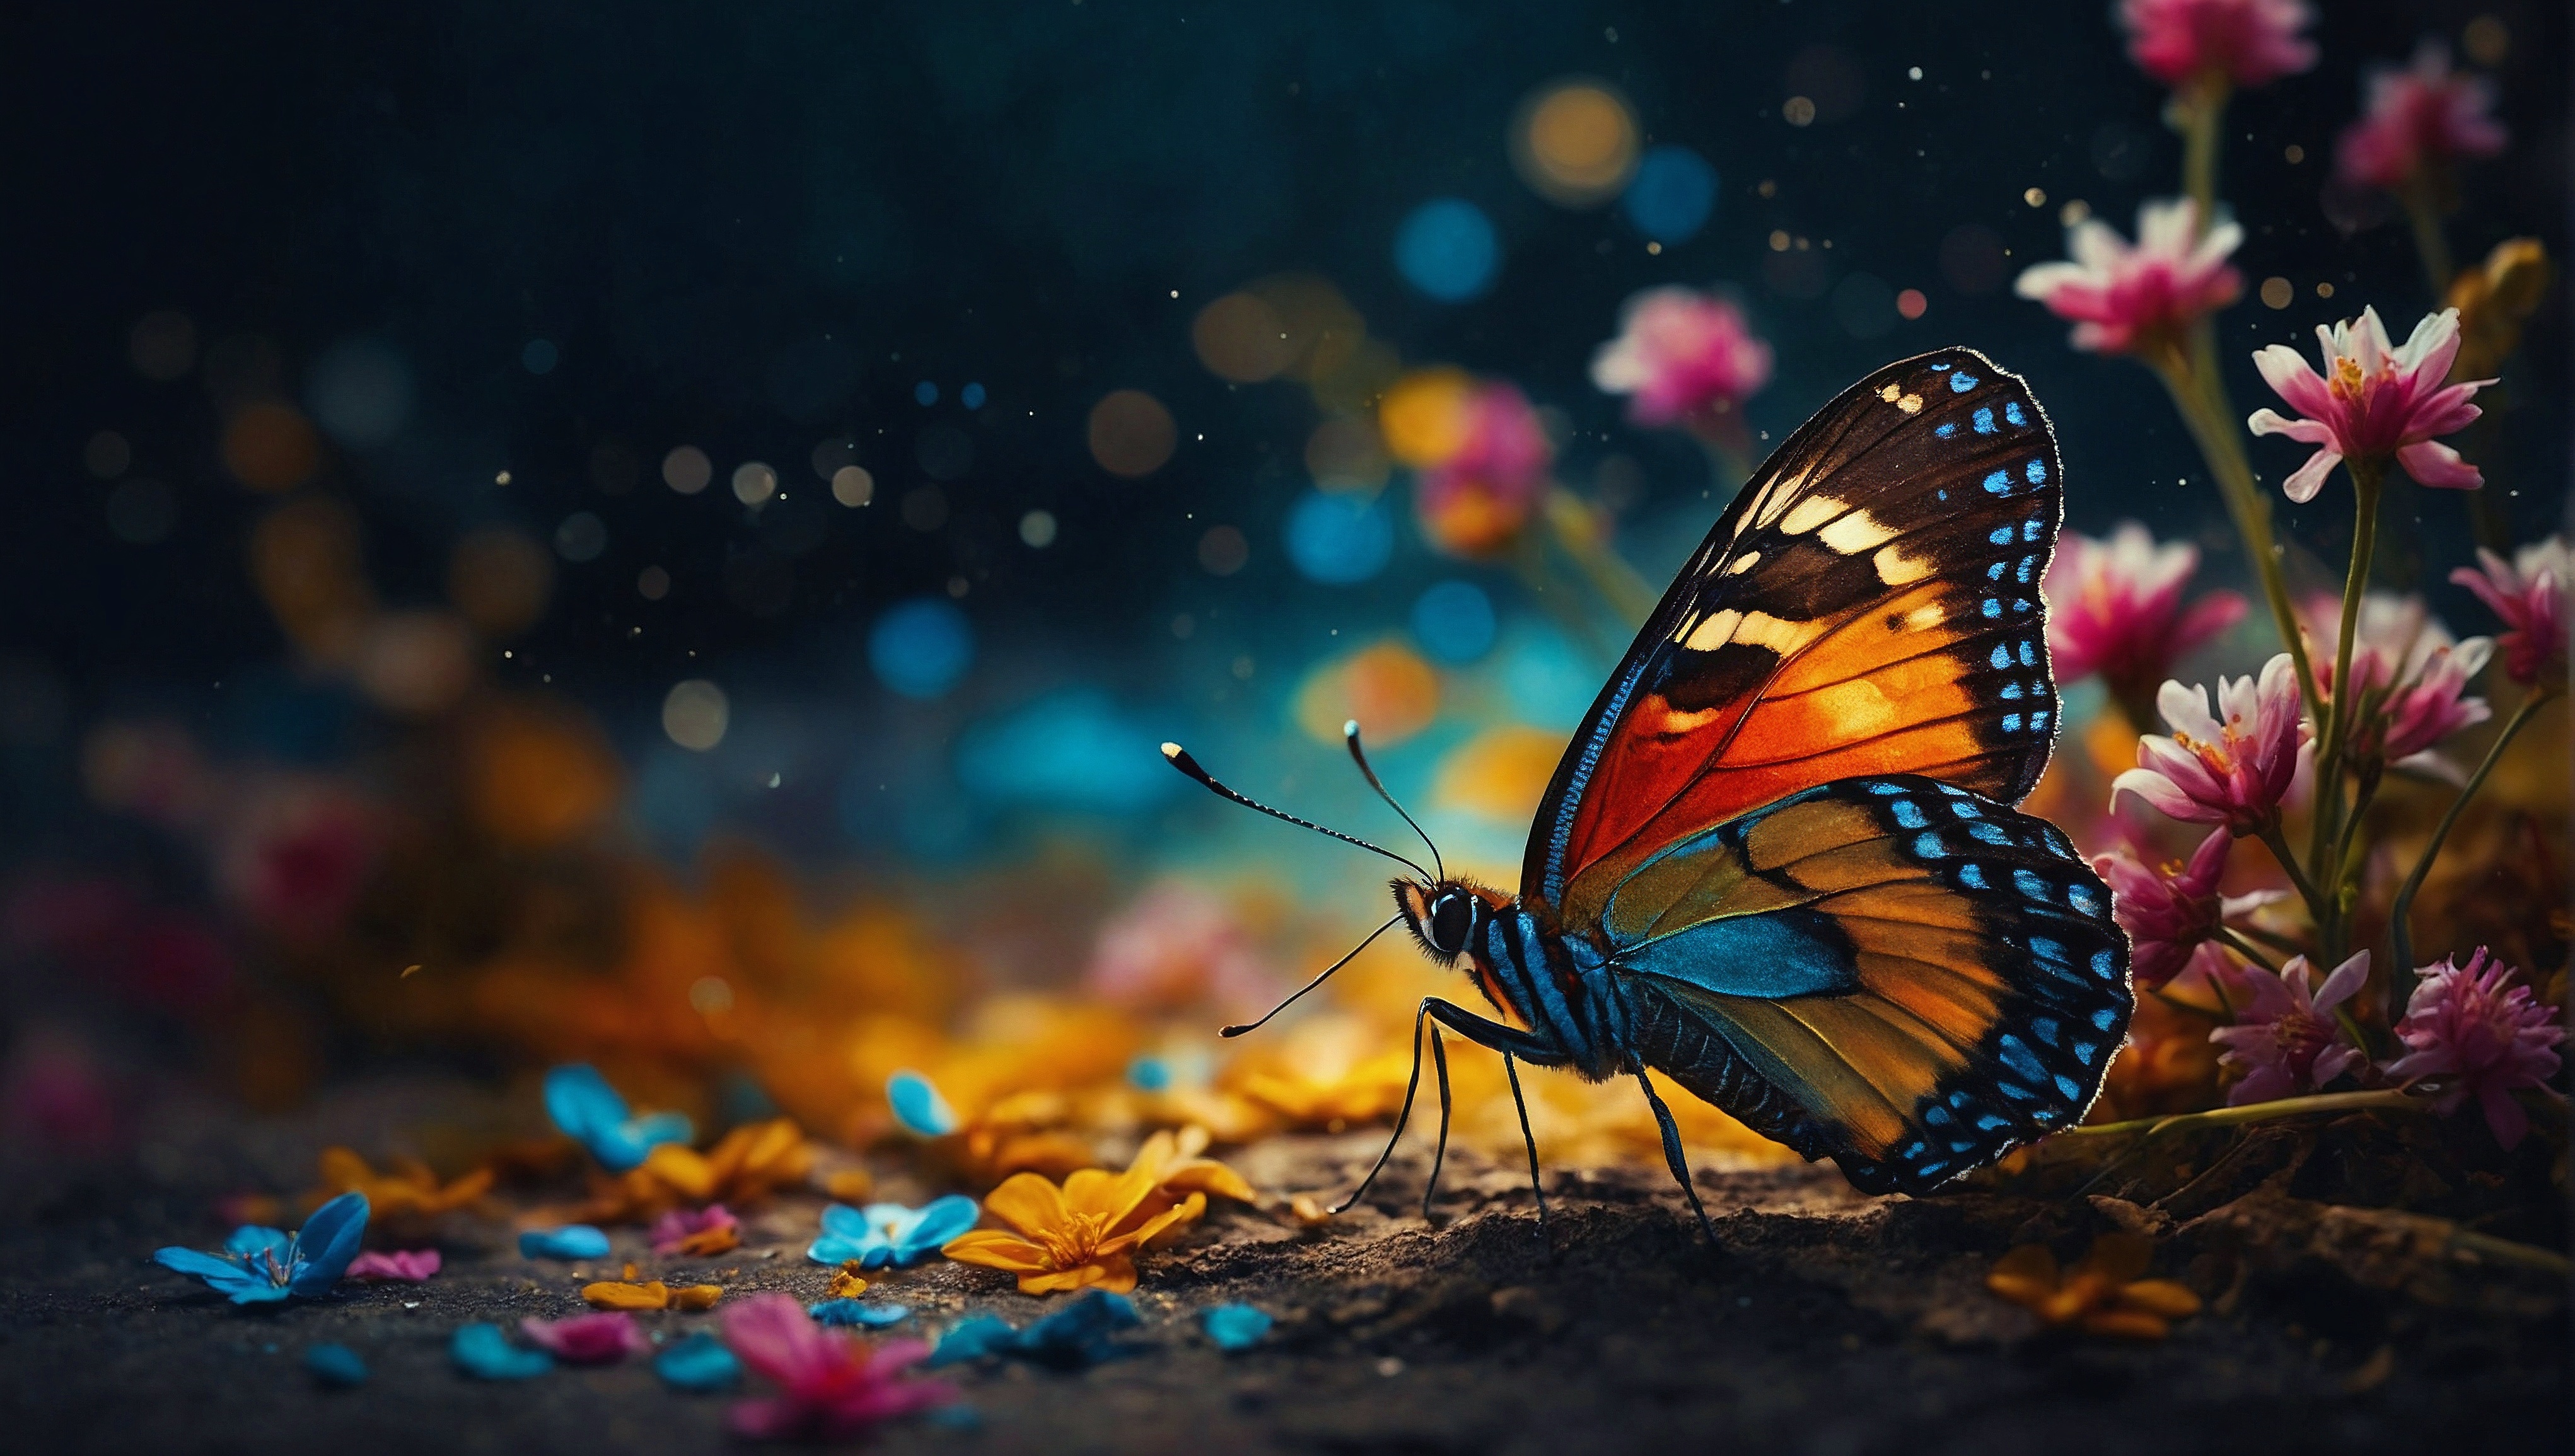 Бесплатное фото Бабочка, сидящая на поле цветов